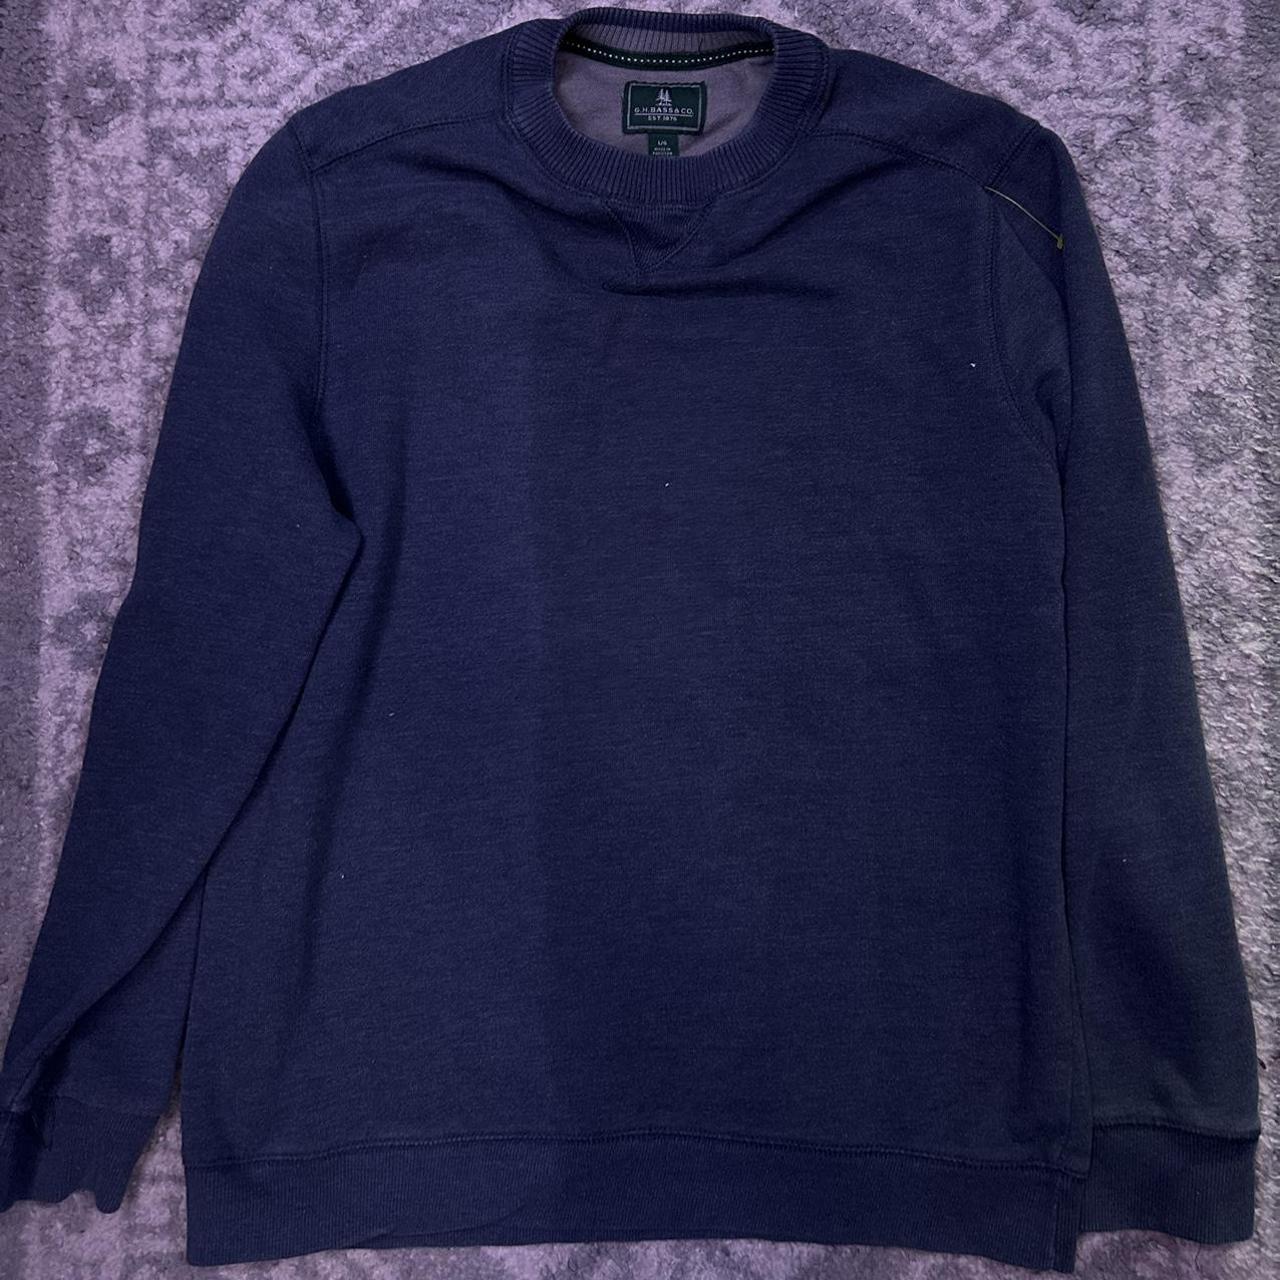 G.H. Bass Navy blue sweater - Depop